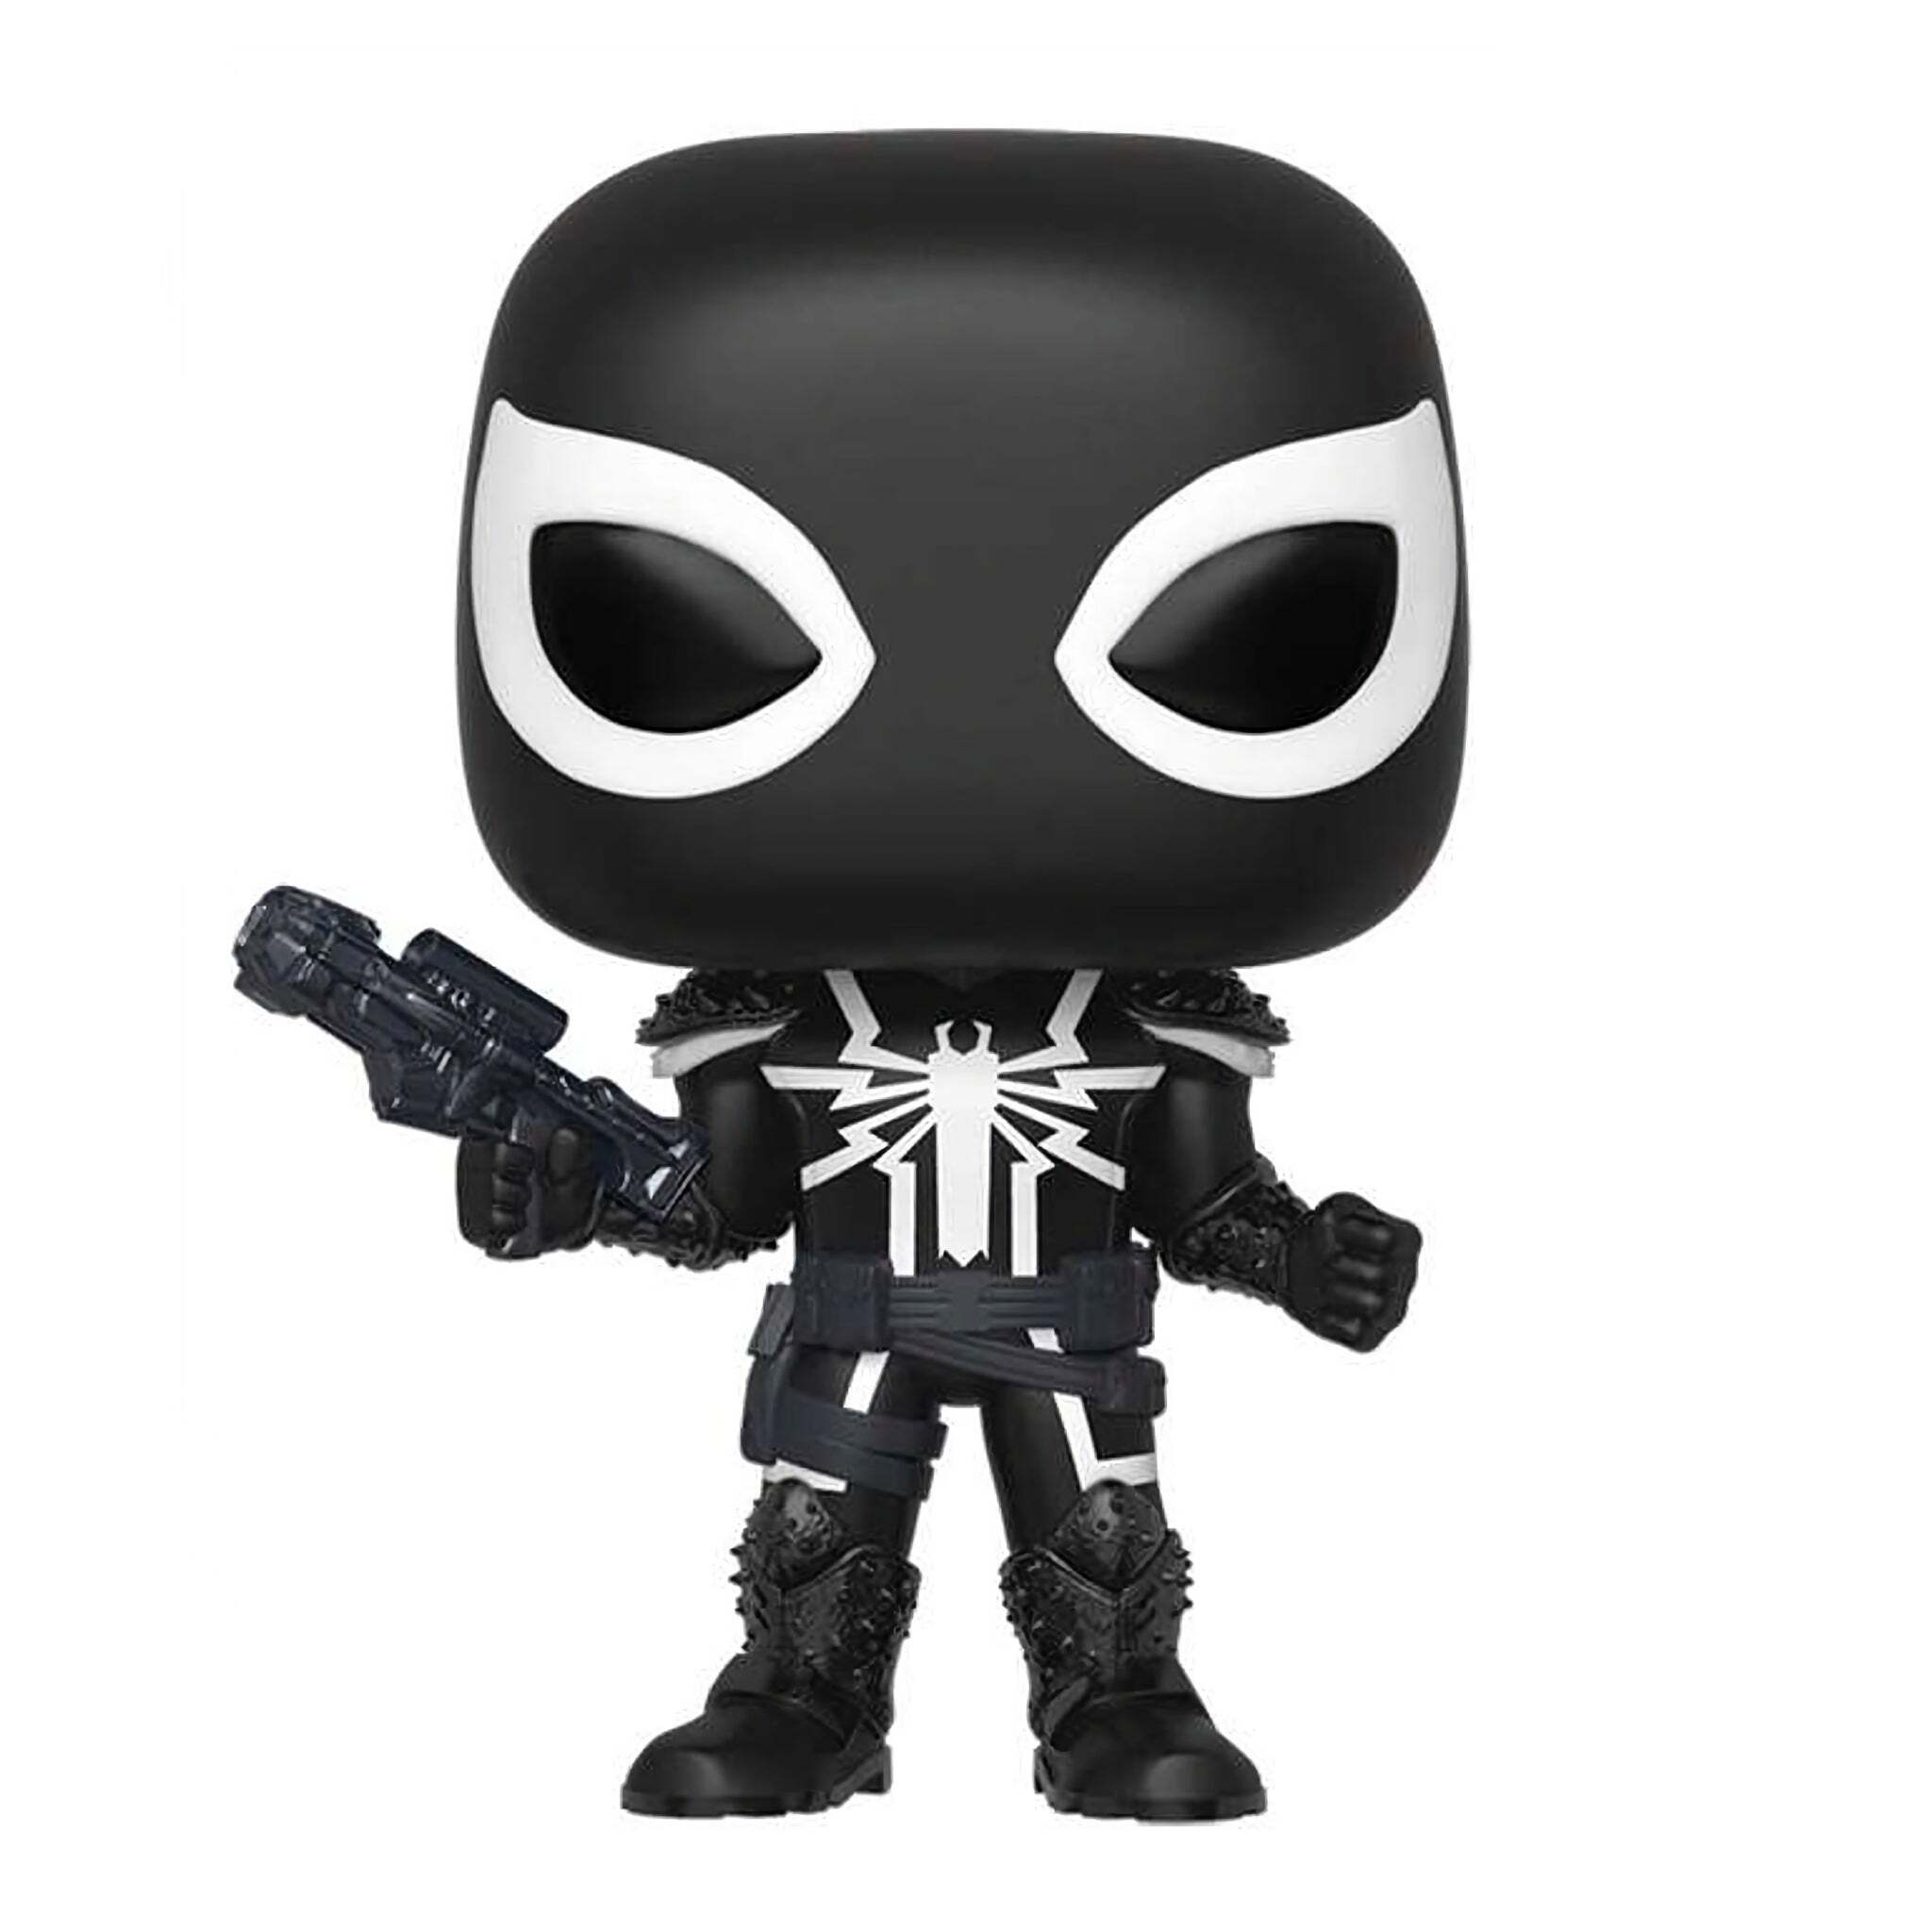 Agent Venom Funko Pop! POP IN A BOX EXCLUSIVE